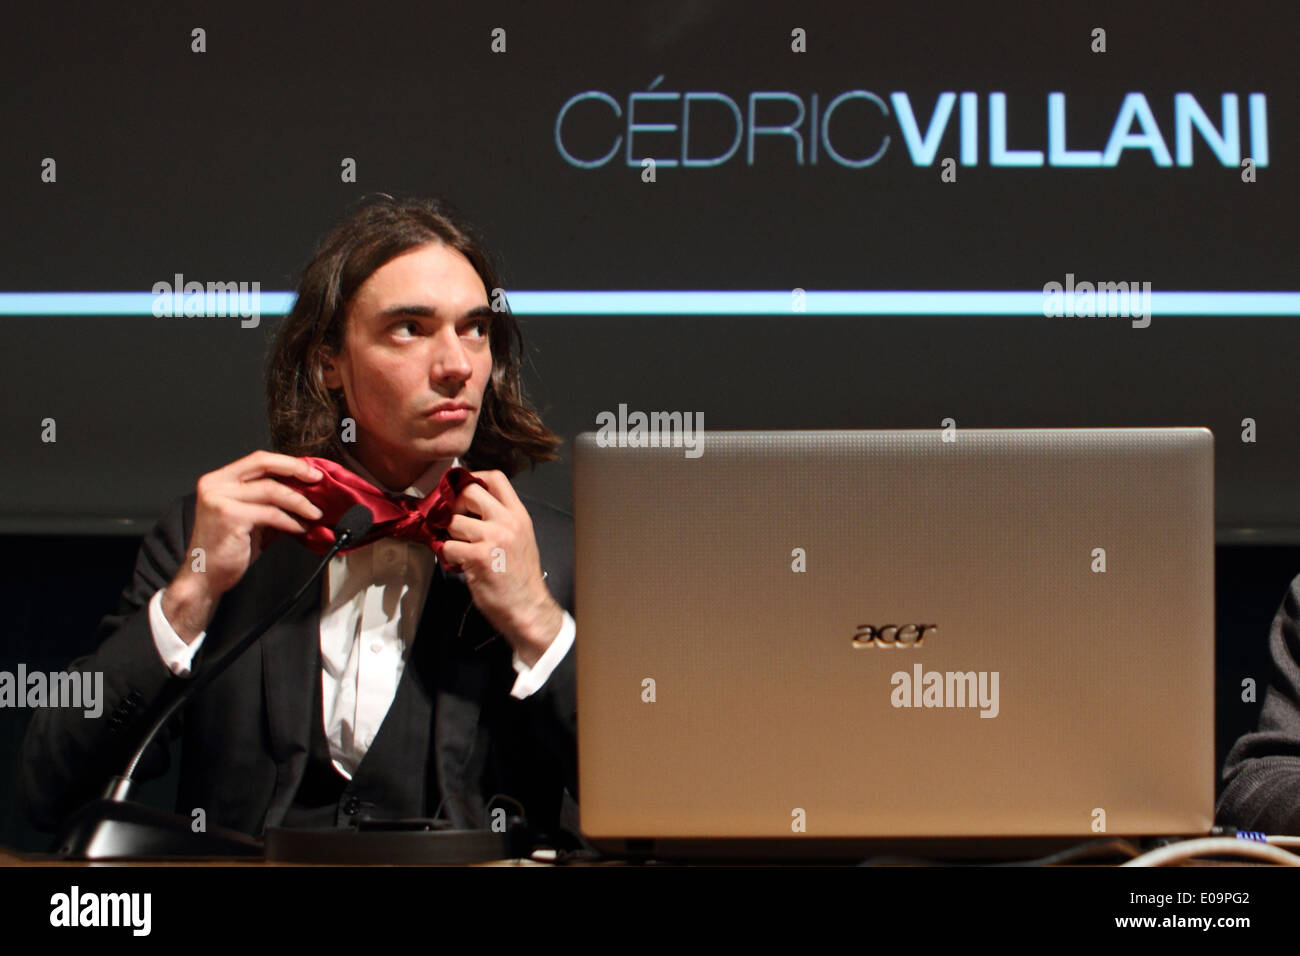 Französischer Mathematiker Cedric Villani Knoten seine Krawatte vor Rede über Kreativität auf Turin Buchmesse. Stockfoto